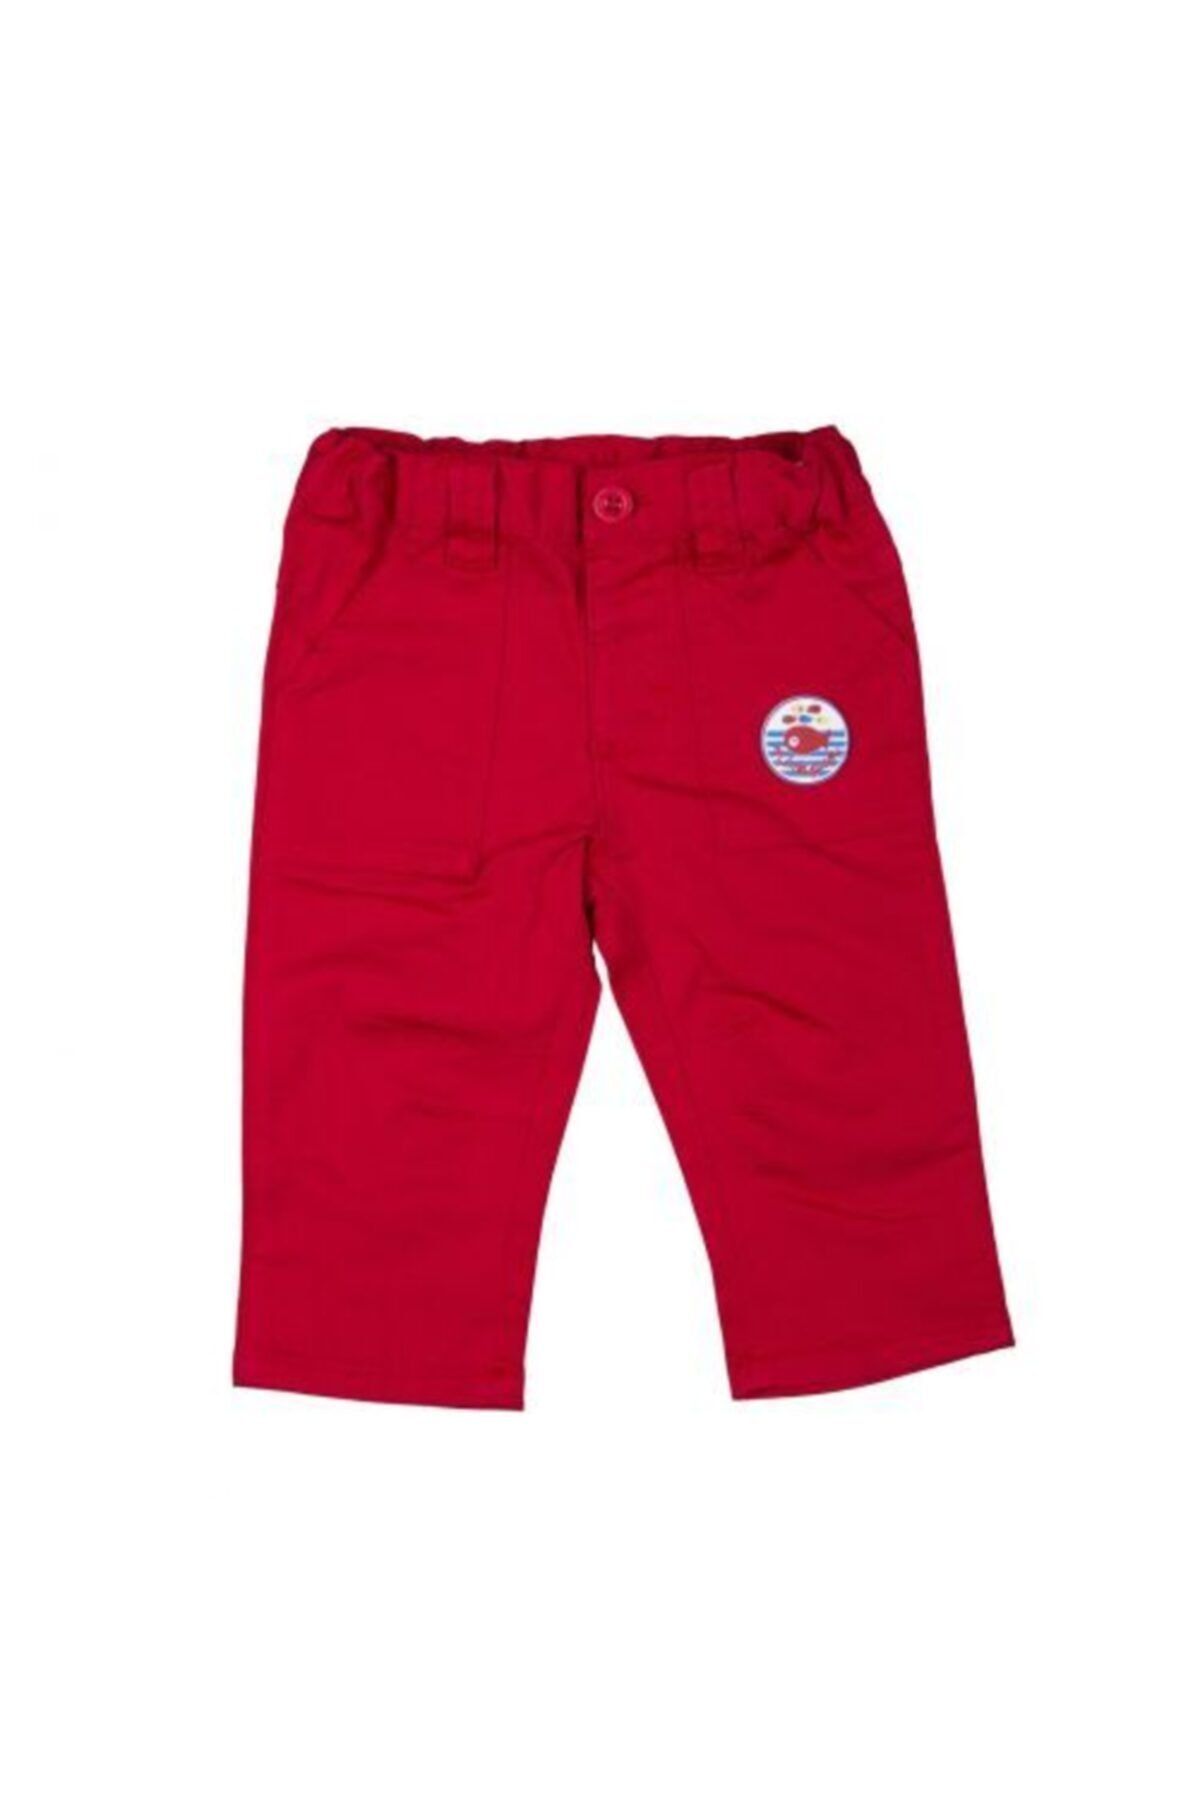 Bebepan Unisex Bebek Kırmızı Pijama Altı